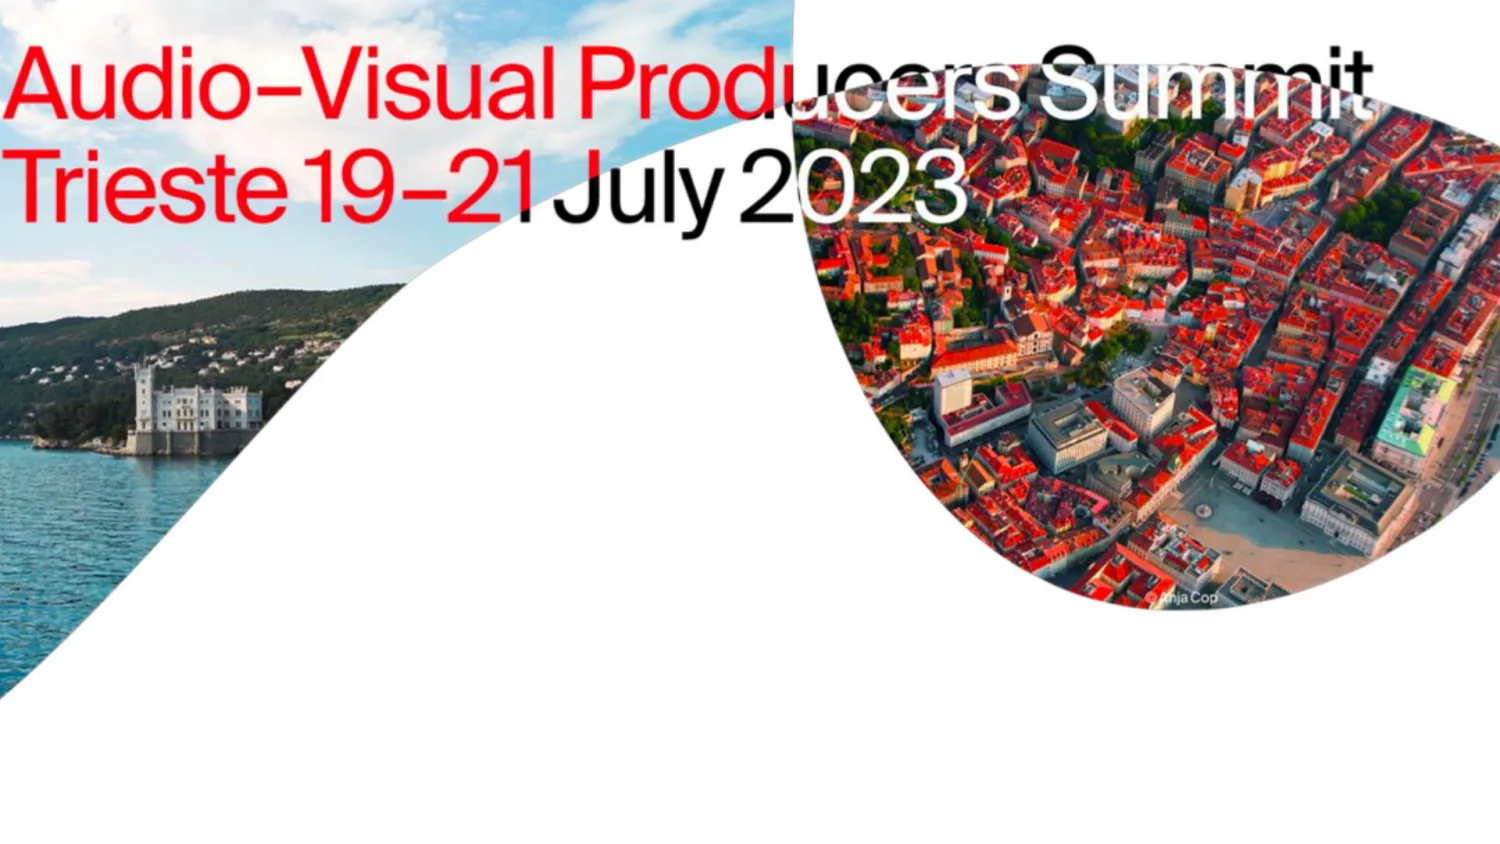 Al via l’Audio-Visual Producers Summit, a Trieste 3 giorni con i top player dell’audiovisivo